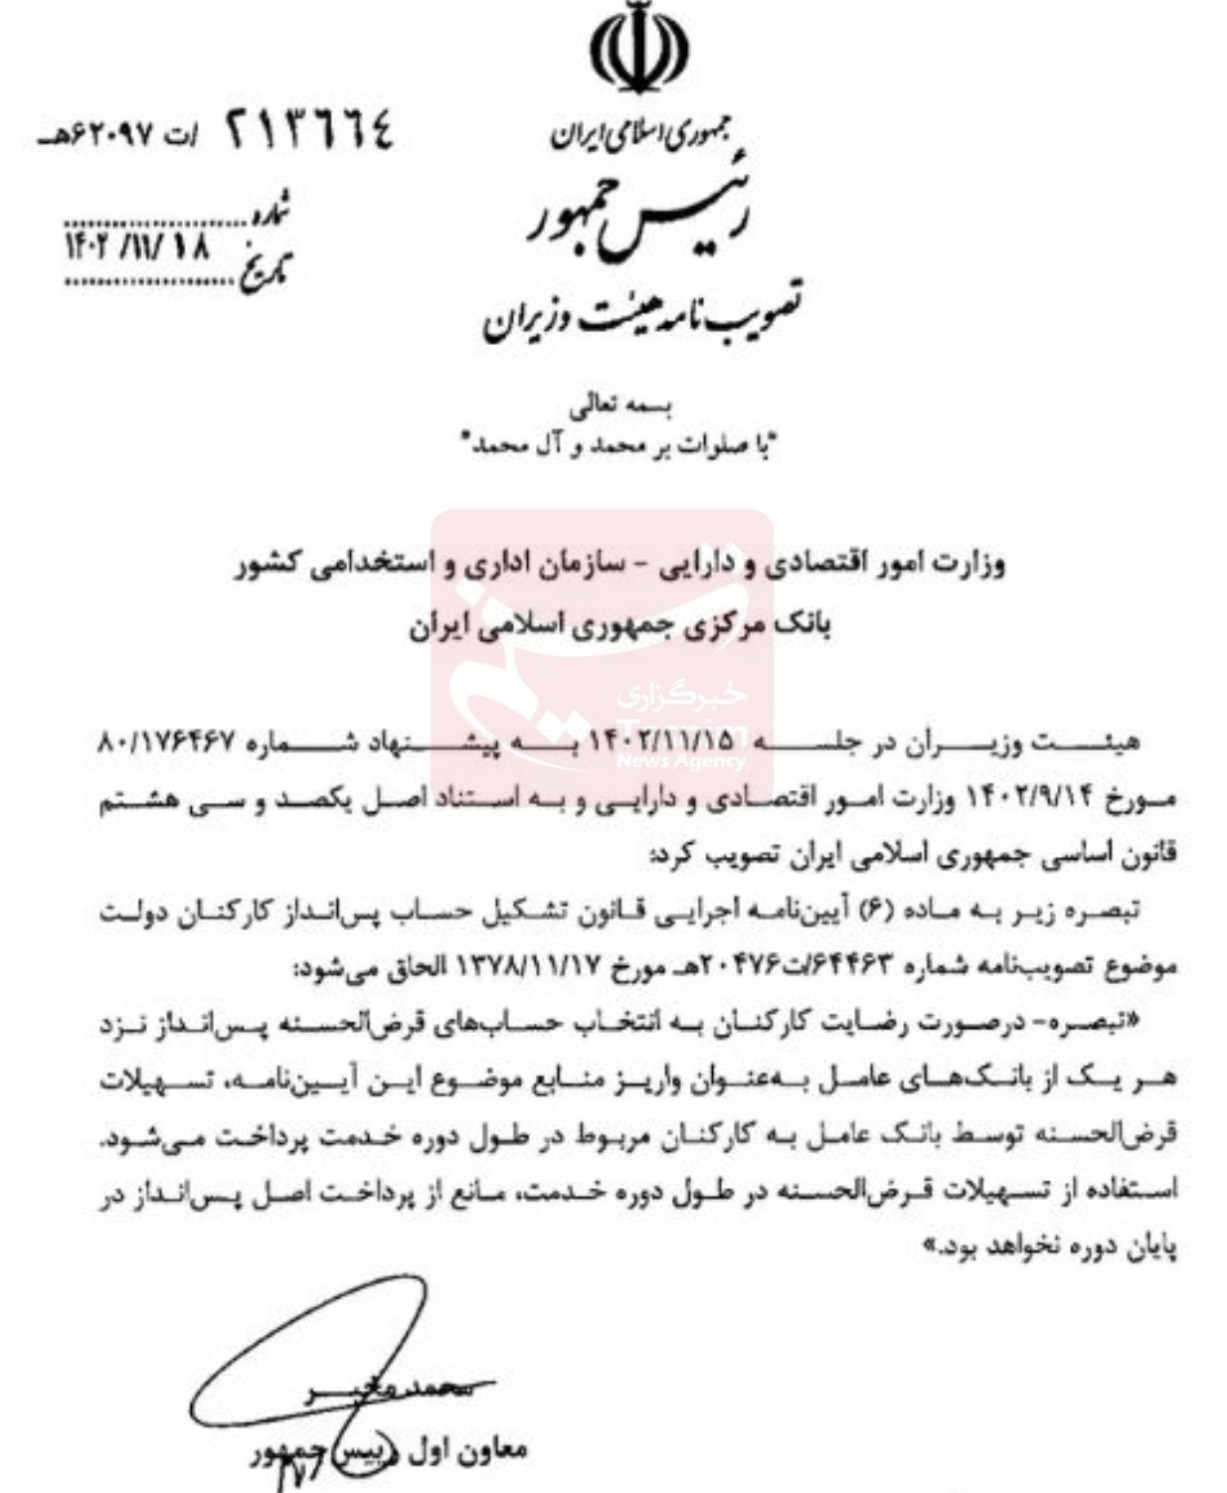 آیین نامه حساب پس از انداز کارکنان دولت4